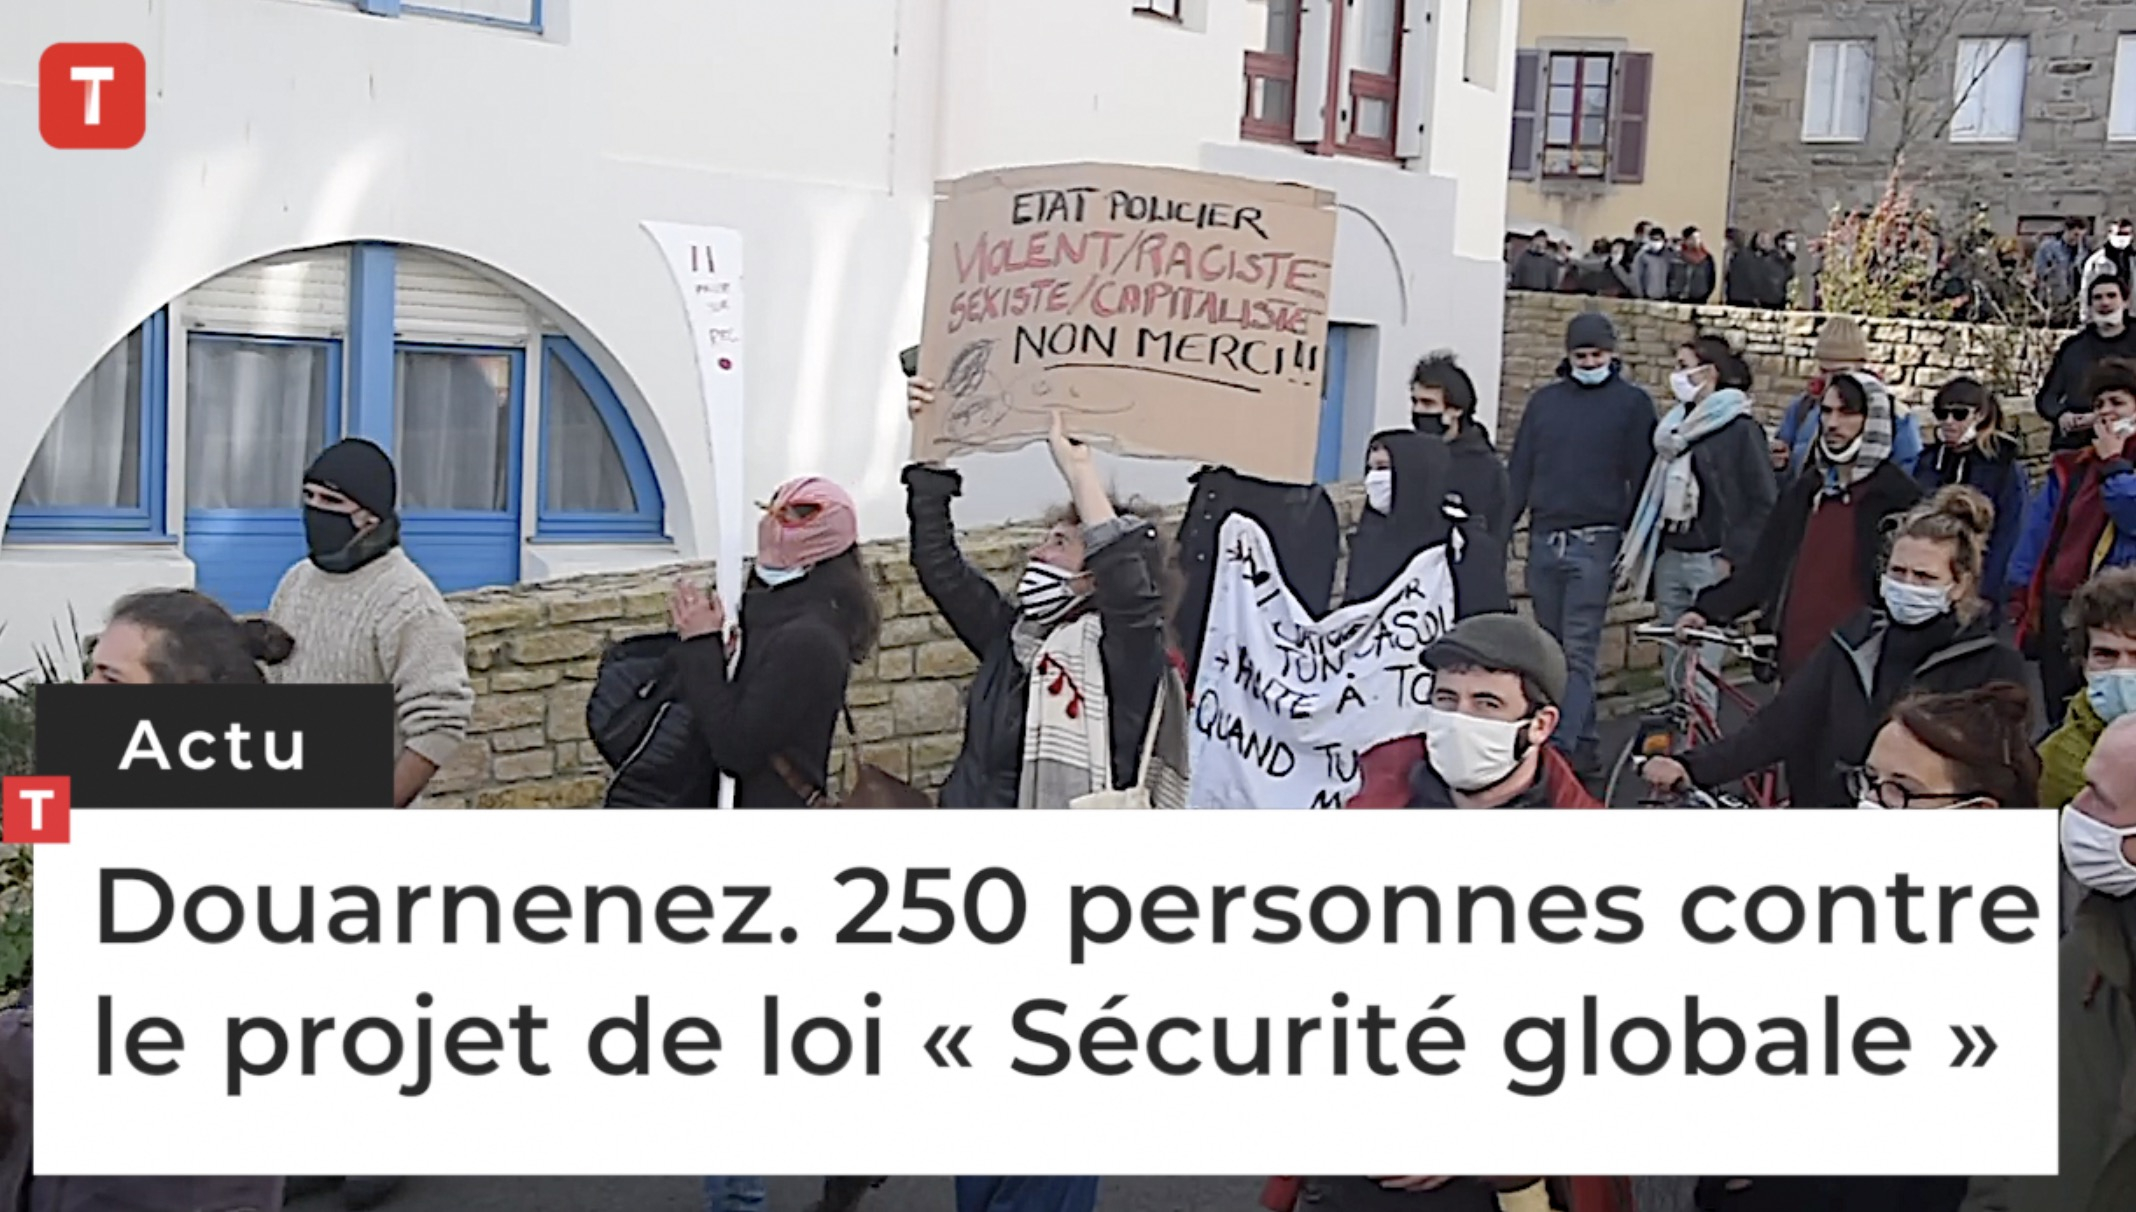 Douarnenez. 250 personnes contre le projet de loi « Sécurité globale » (Le Télégramme)